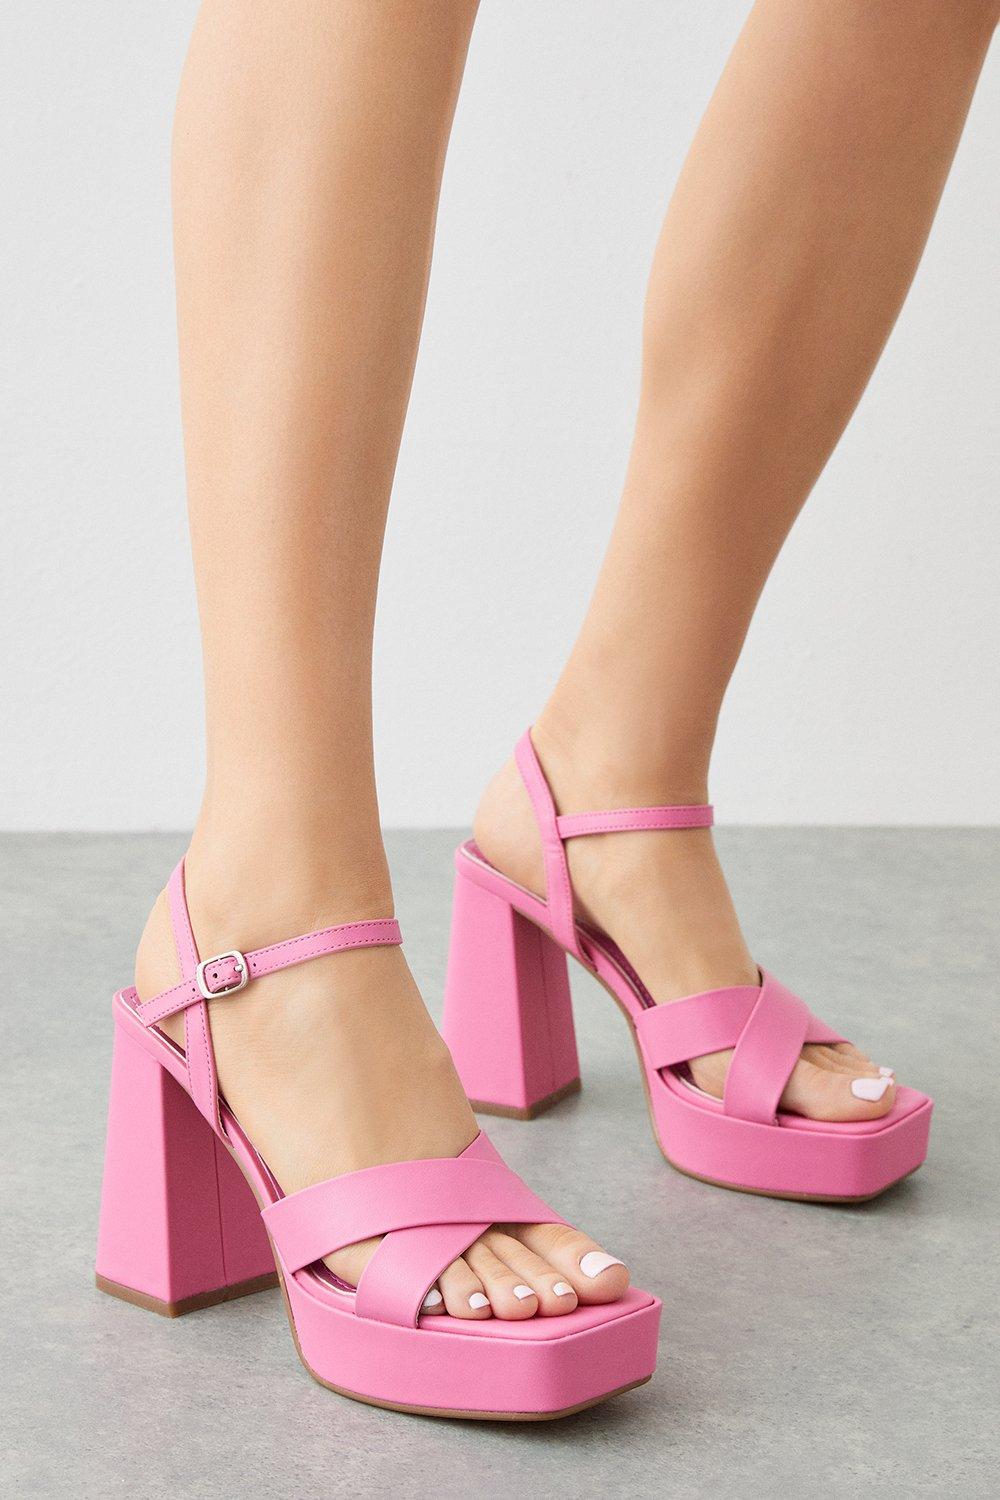 Women’s Tia Cross Strap Platform Heel Sandals - pink - 3